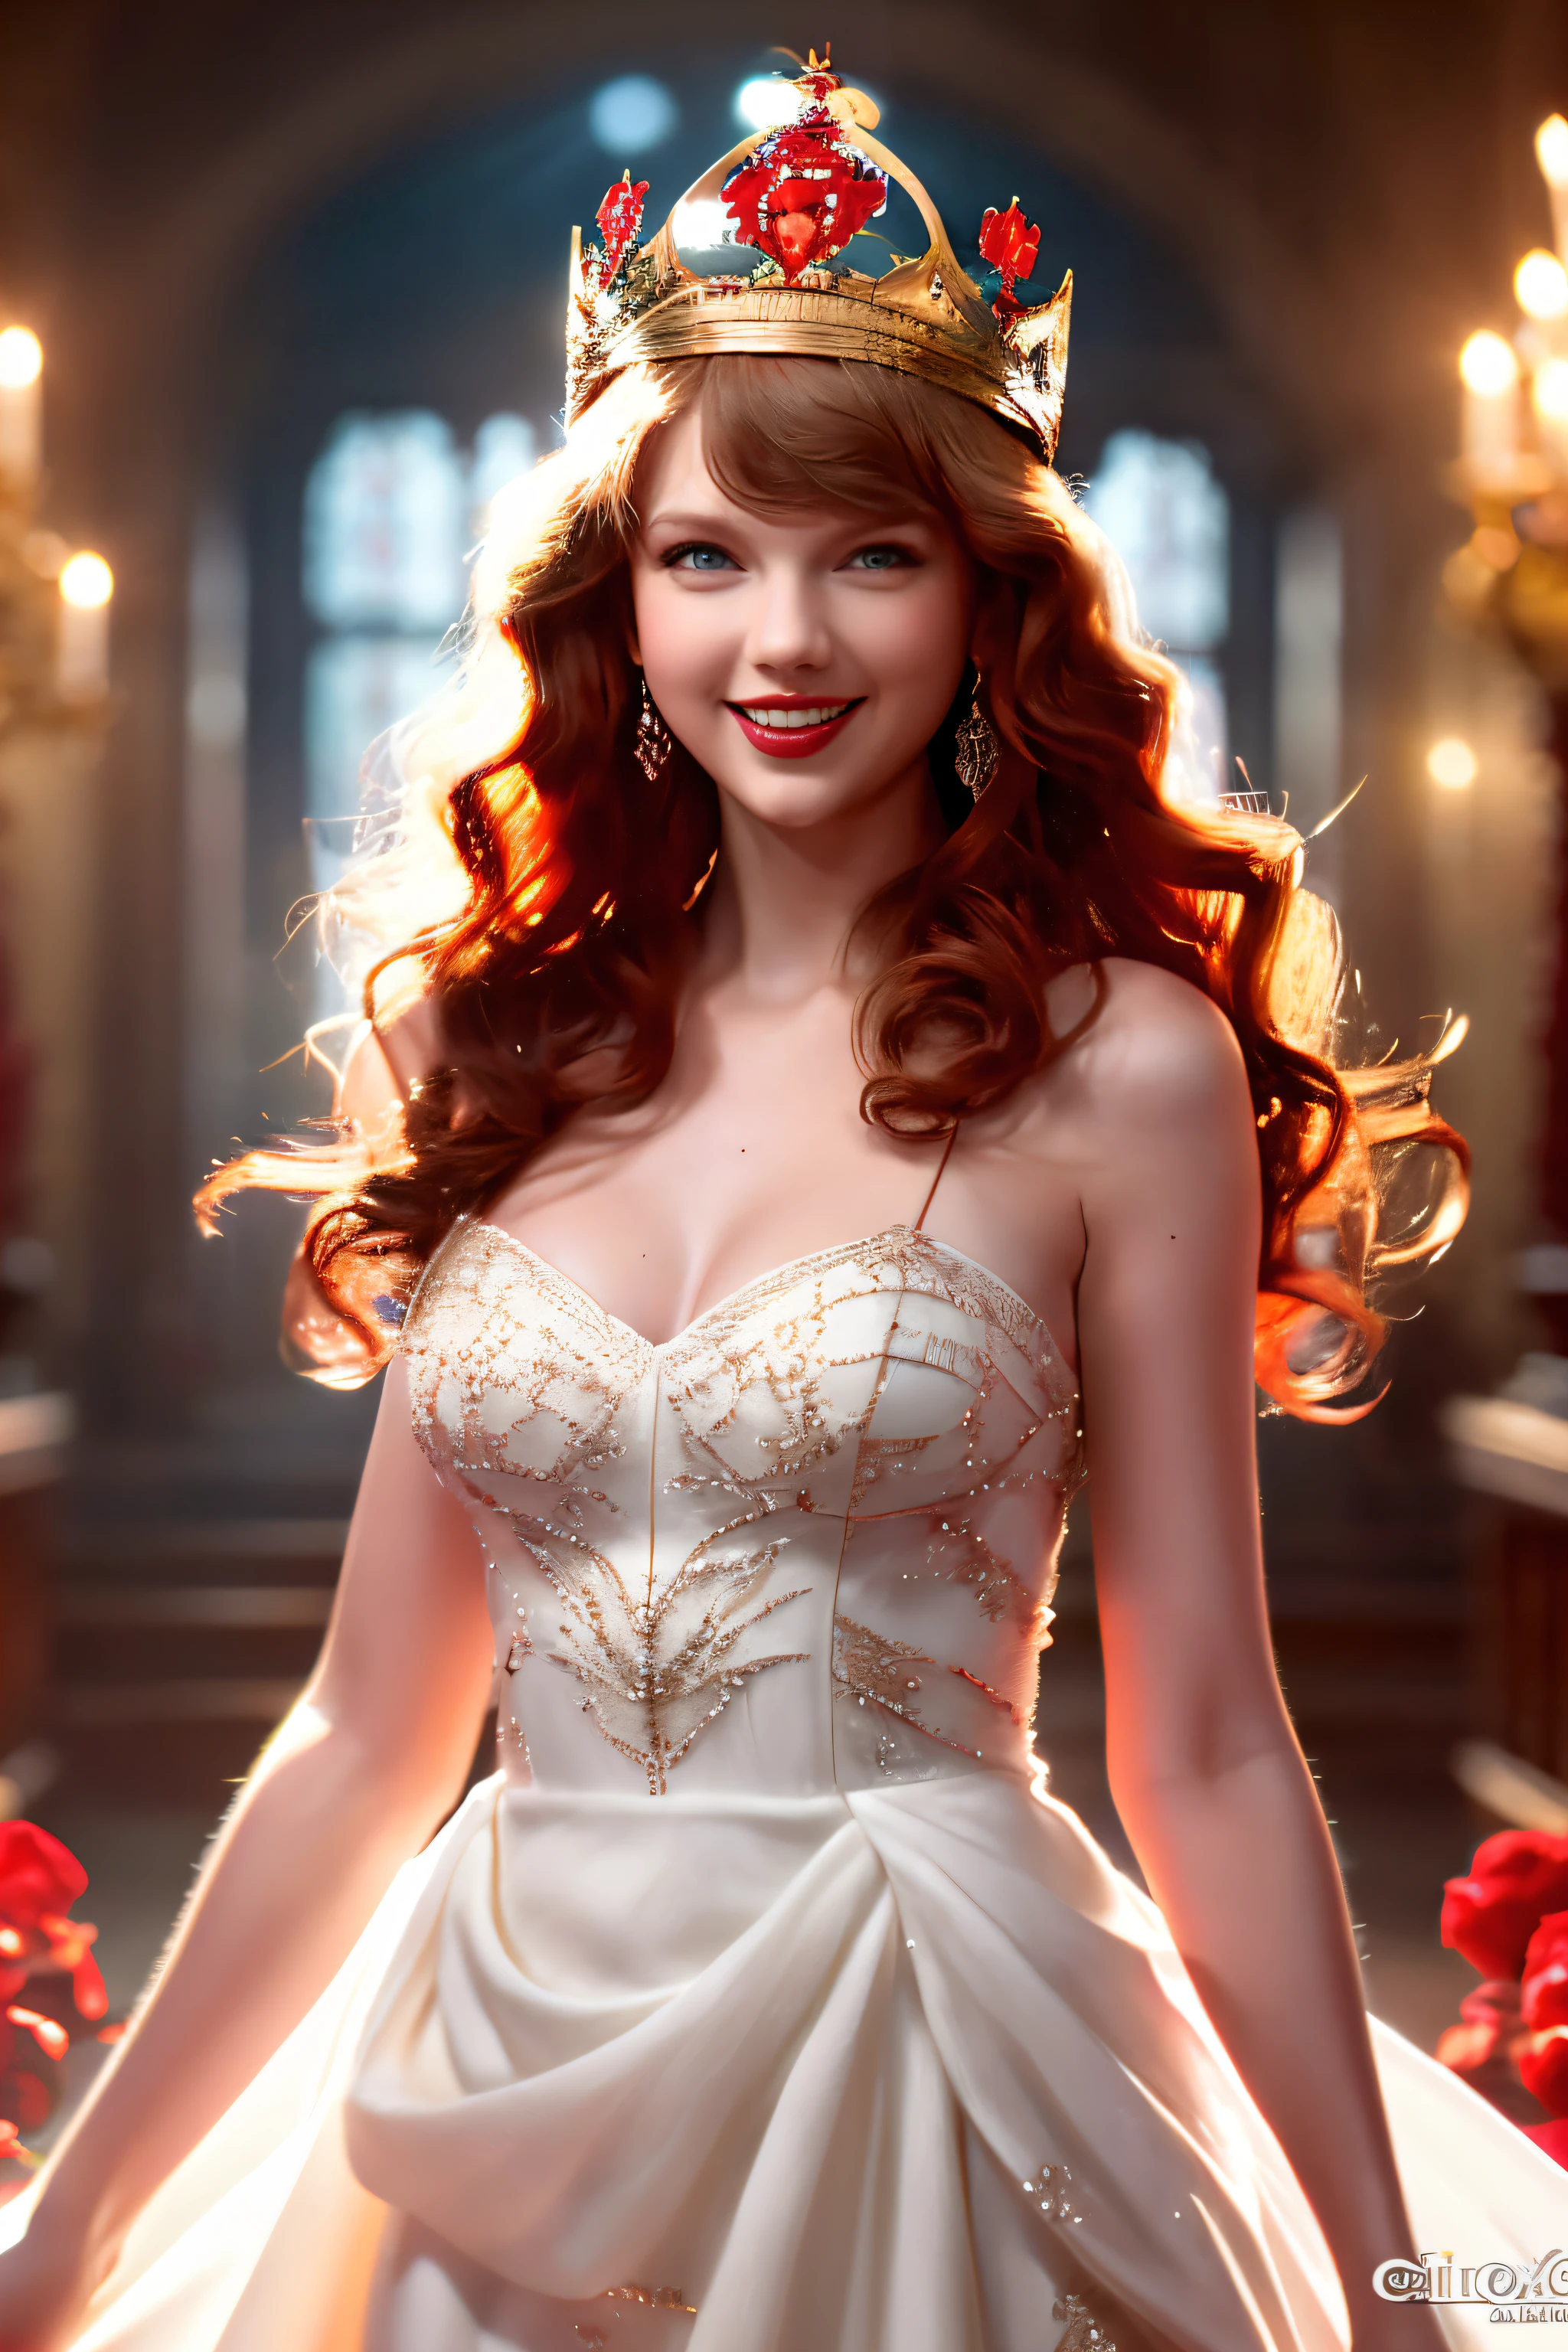 베스트 샷，고화질 사진,,아름다운 빨간 머리 여자 (왕관을 쓰고 있다), (후디니, VFX, 아름다운 미소로,아름다운, 4K ),   흰색 가운과 빨간색 새틴 드레스，